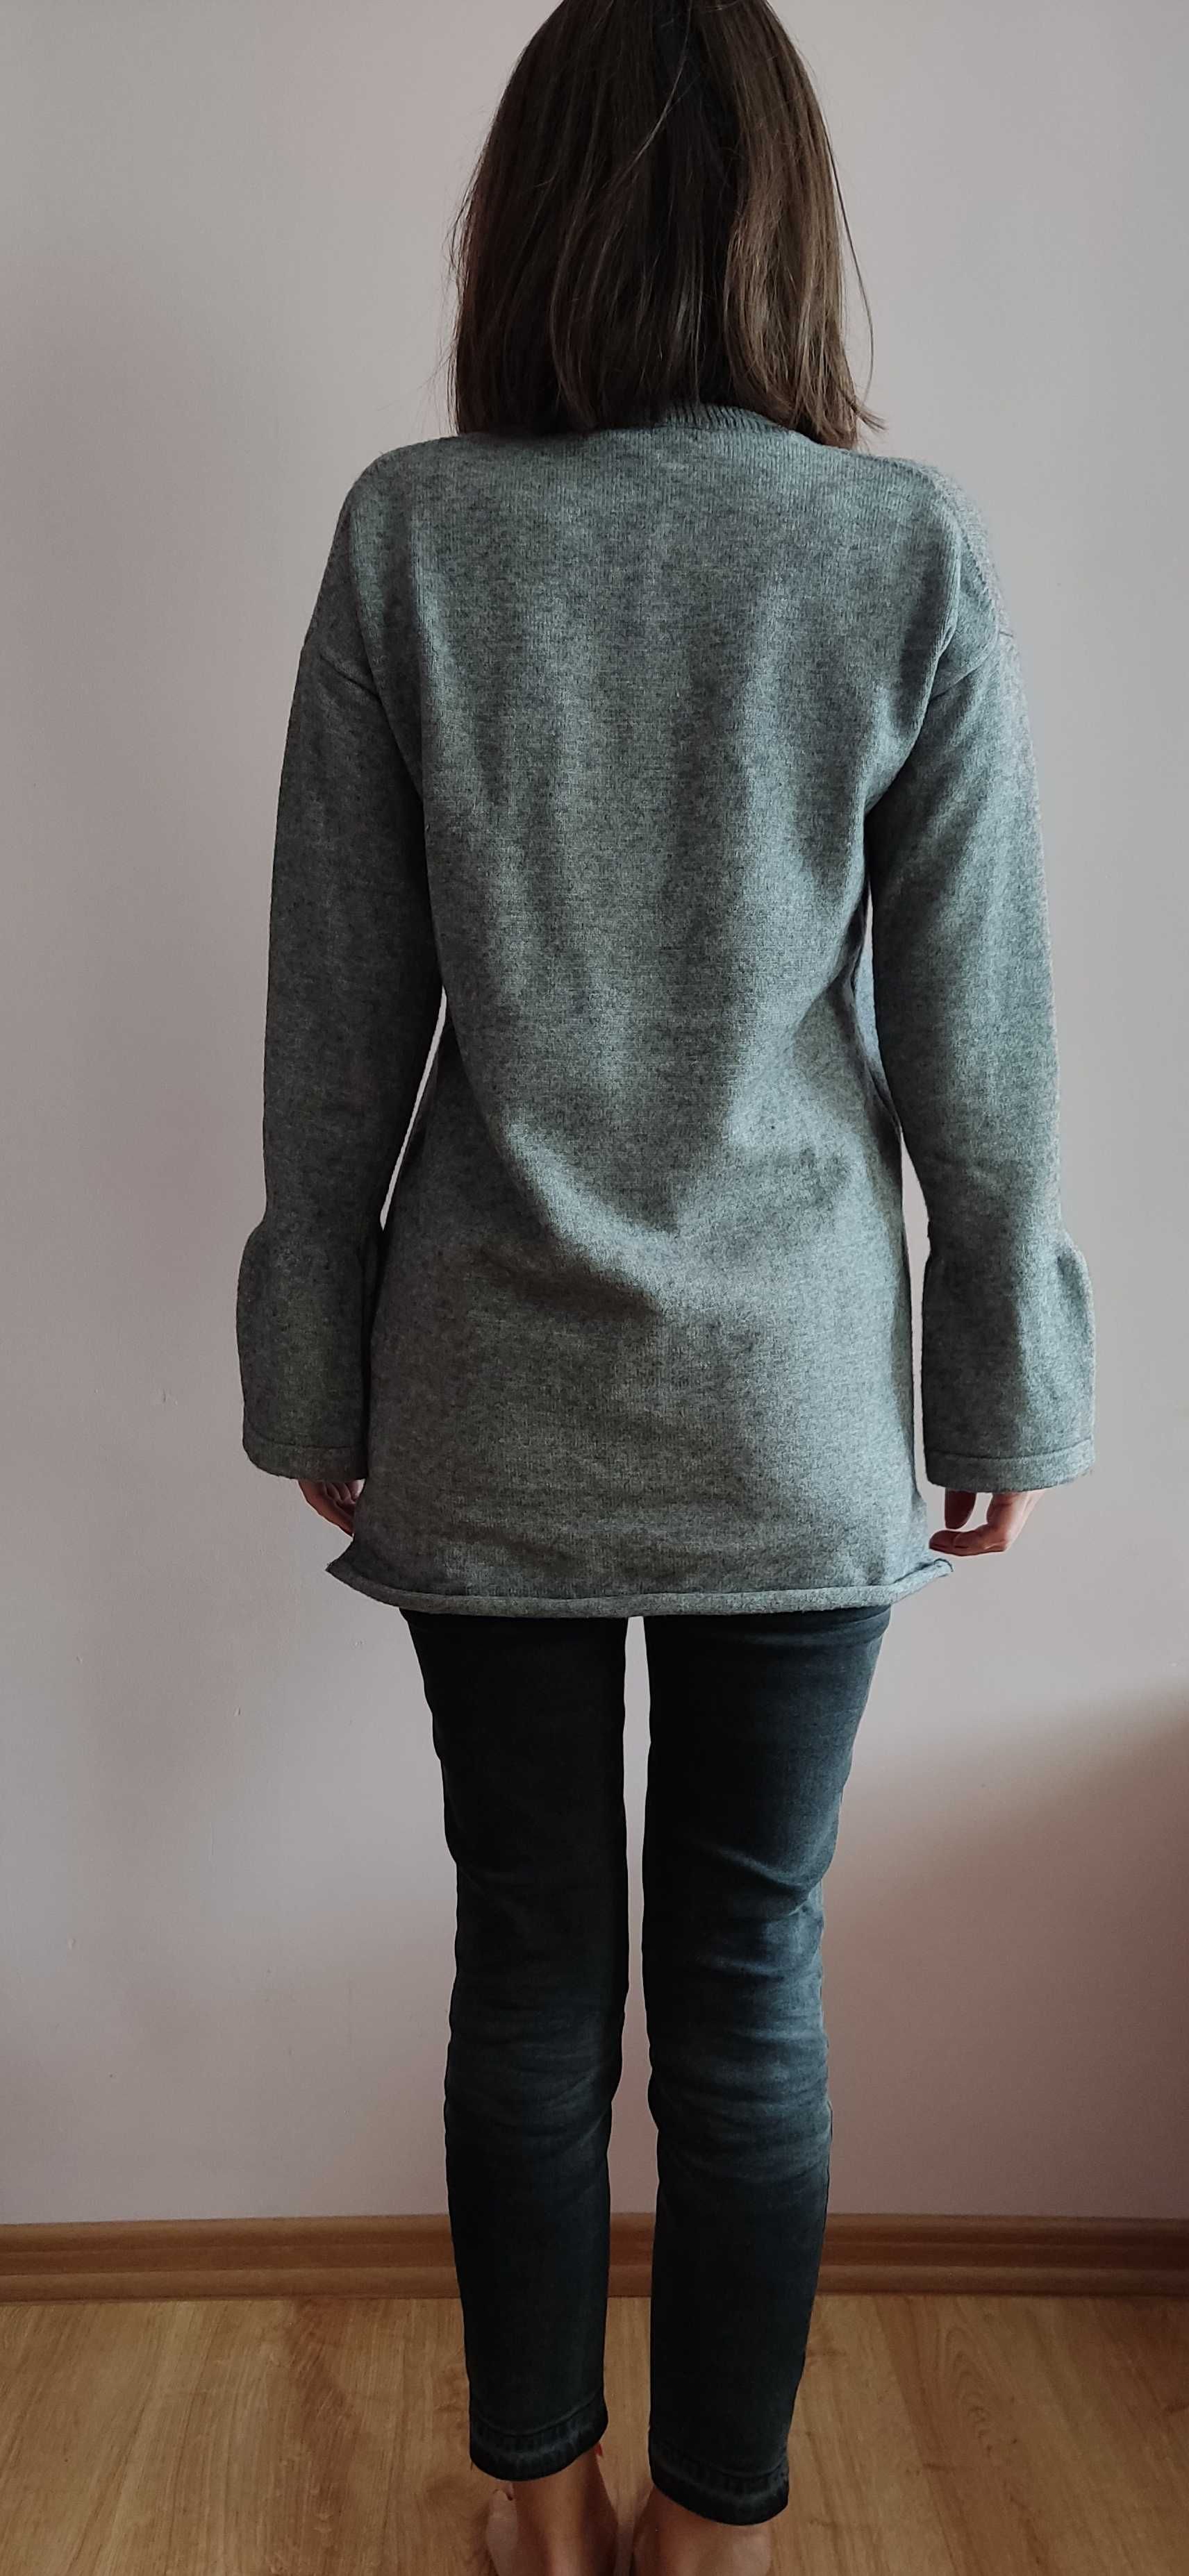 Ciepły szary sweter, rozmiar S/M